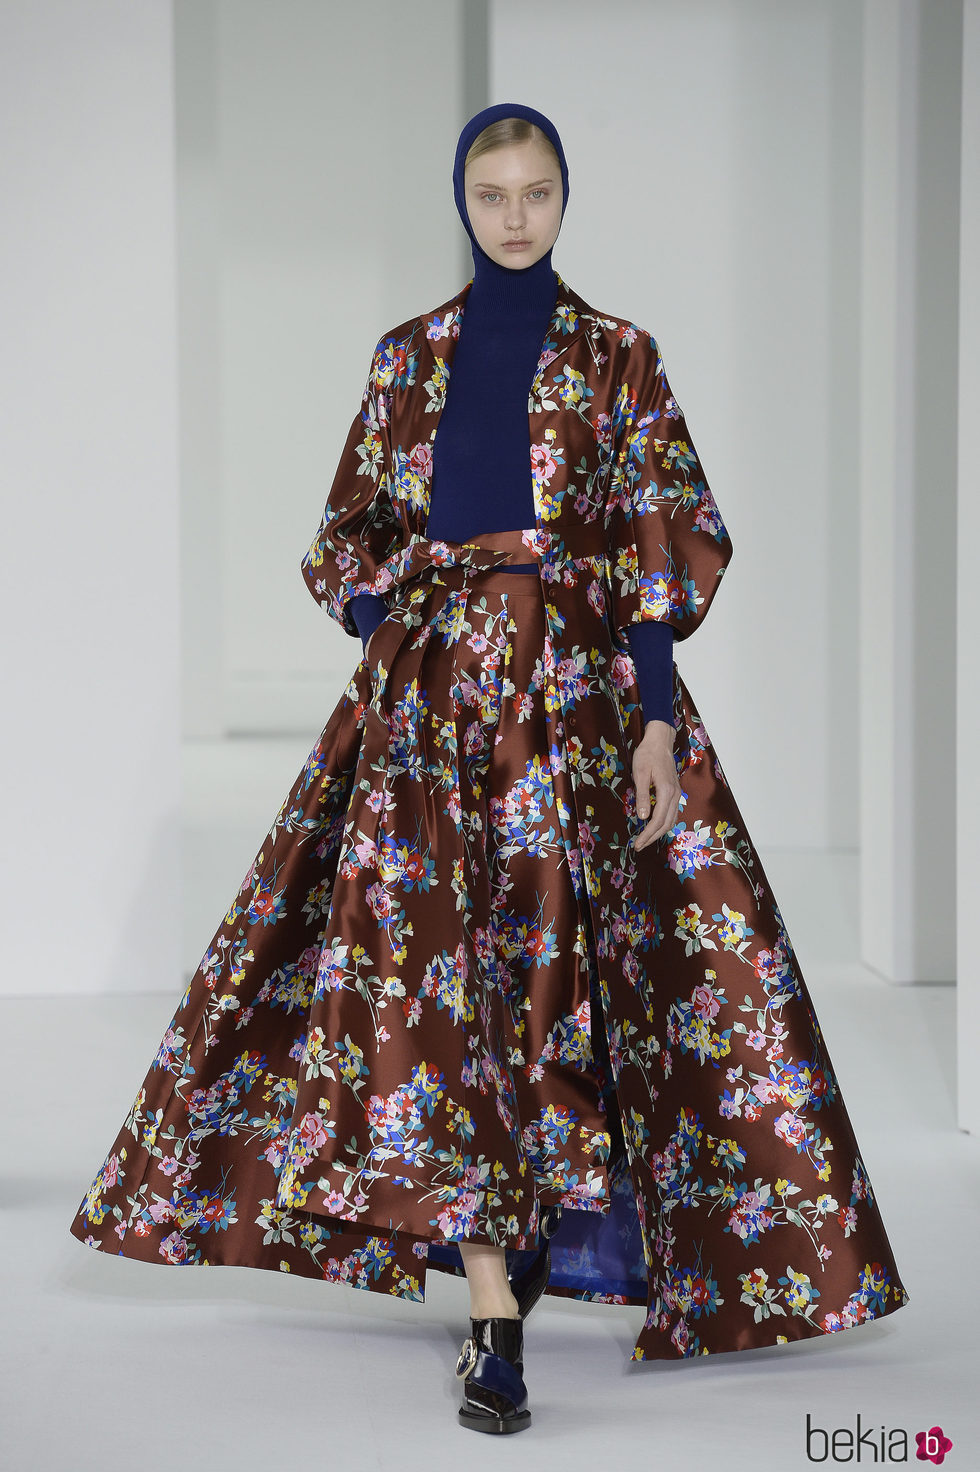 Vestido floral de Delpozo otoño/invierno 2017/2018 en la New York Fashion Week